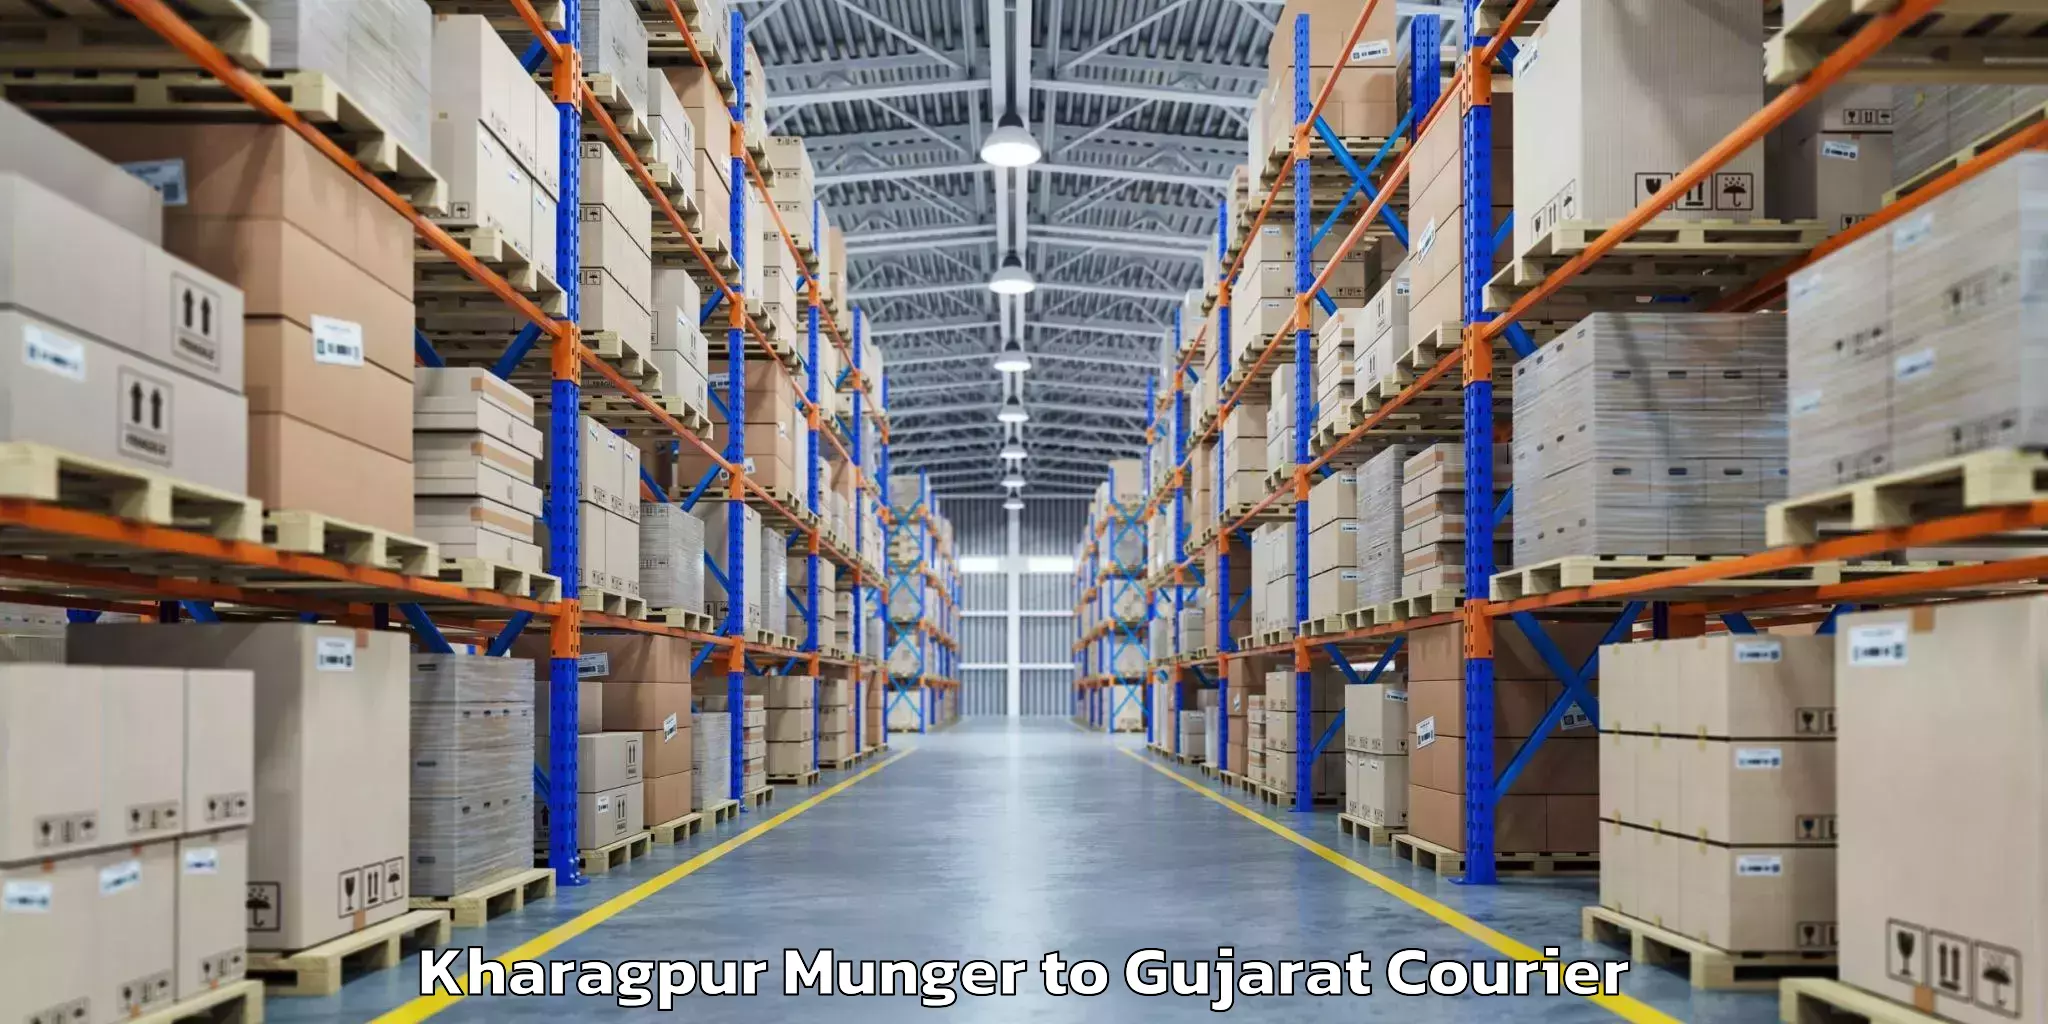 Baggage shipping experts Kharagpur Munger to Surat